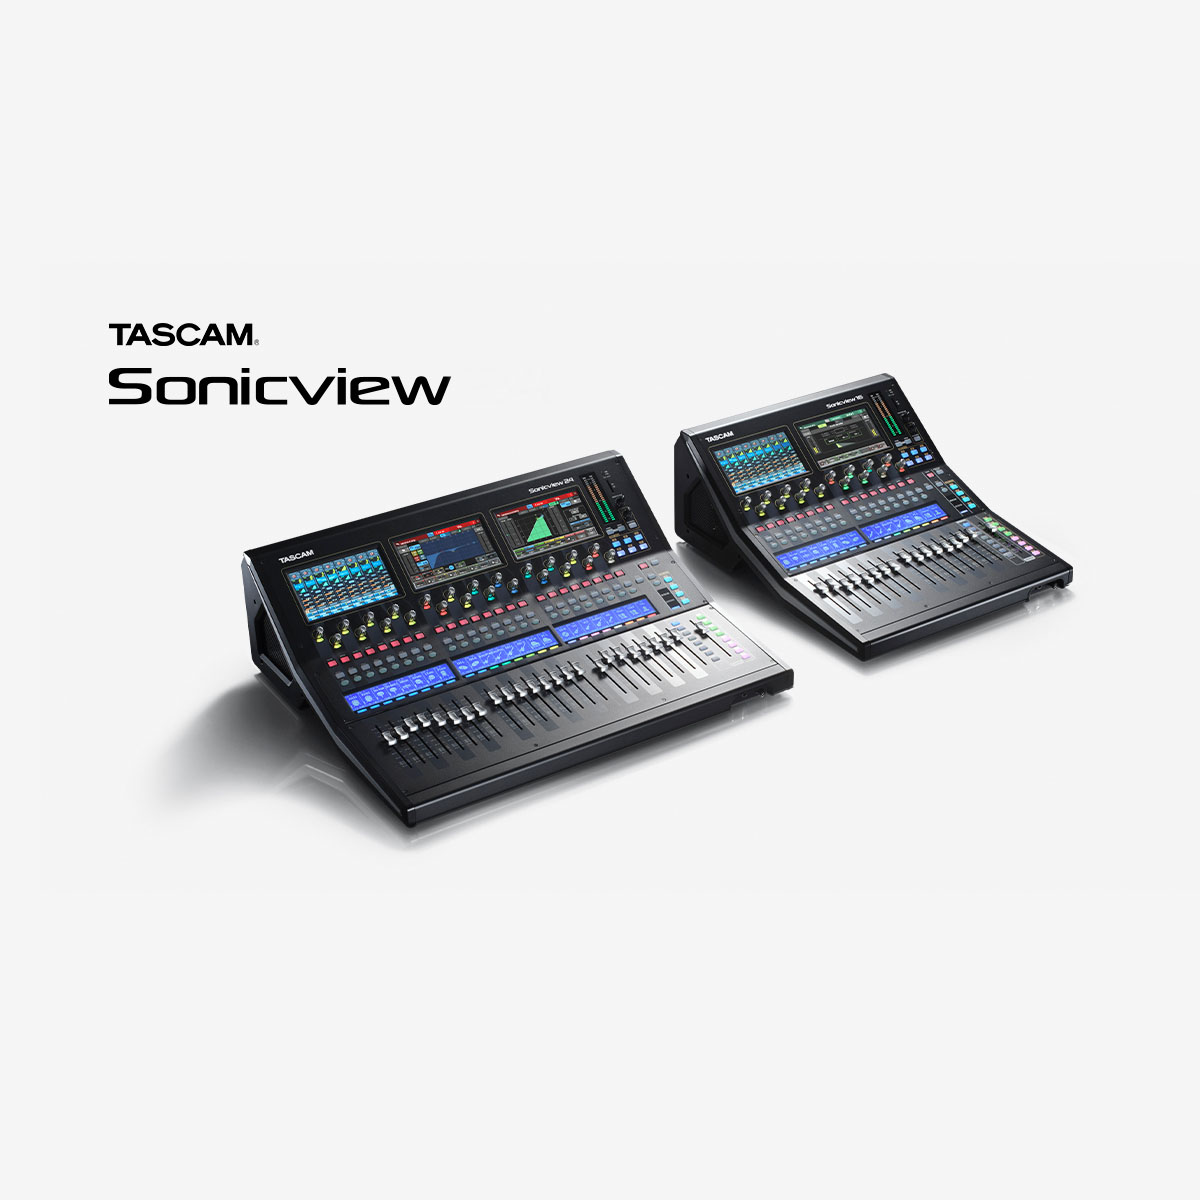 デジタルミキサー『TASCAM Sonicview 24』および『TASCAM Sonicview 16』の最新ファームウェア V1.5をリリース 放送に必要な各種機能を追加・スナップショットリコールを高速化